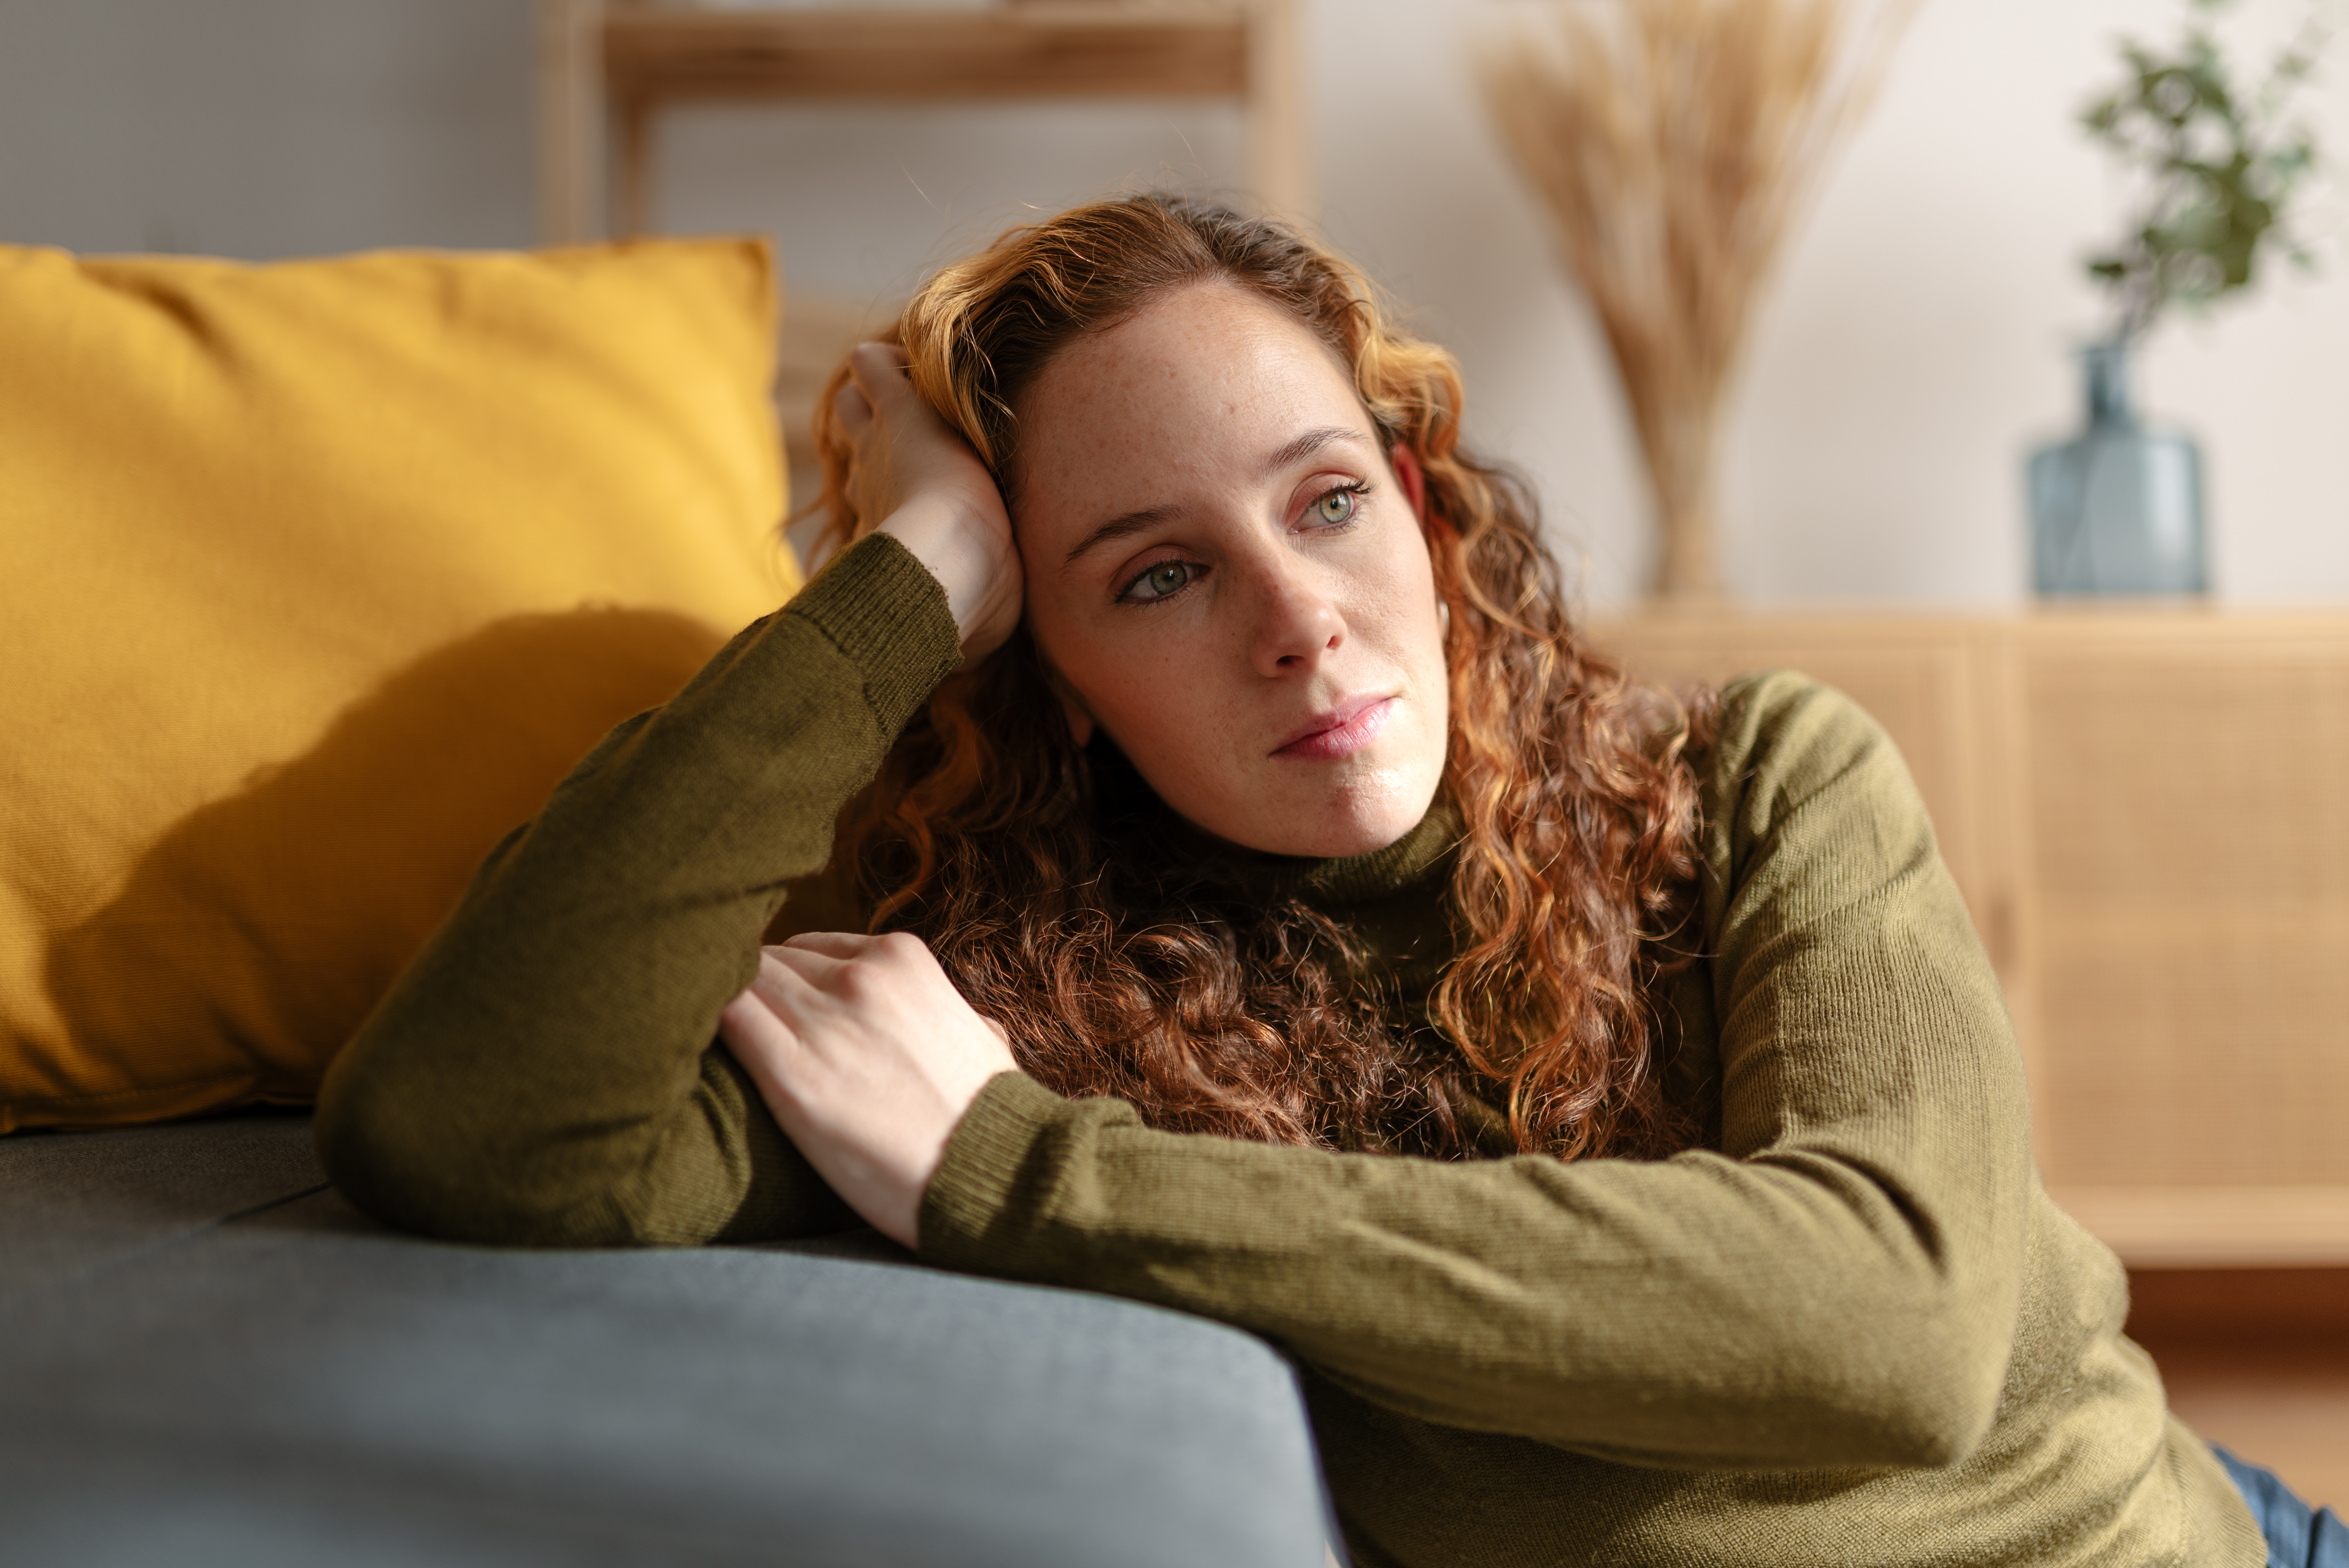 Porträt einer jungen Frau mit langen gelockten roten Haaren, die auf dem Boden sitzt, sich auf ein Sofa stützt und mit traurigem Gesicht wegschaut. Ein Moment der Traurigkeit und Sorge im Wohnzimmer ihres Hauses. | Quelle: Getty Images